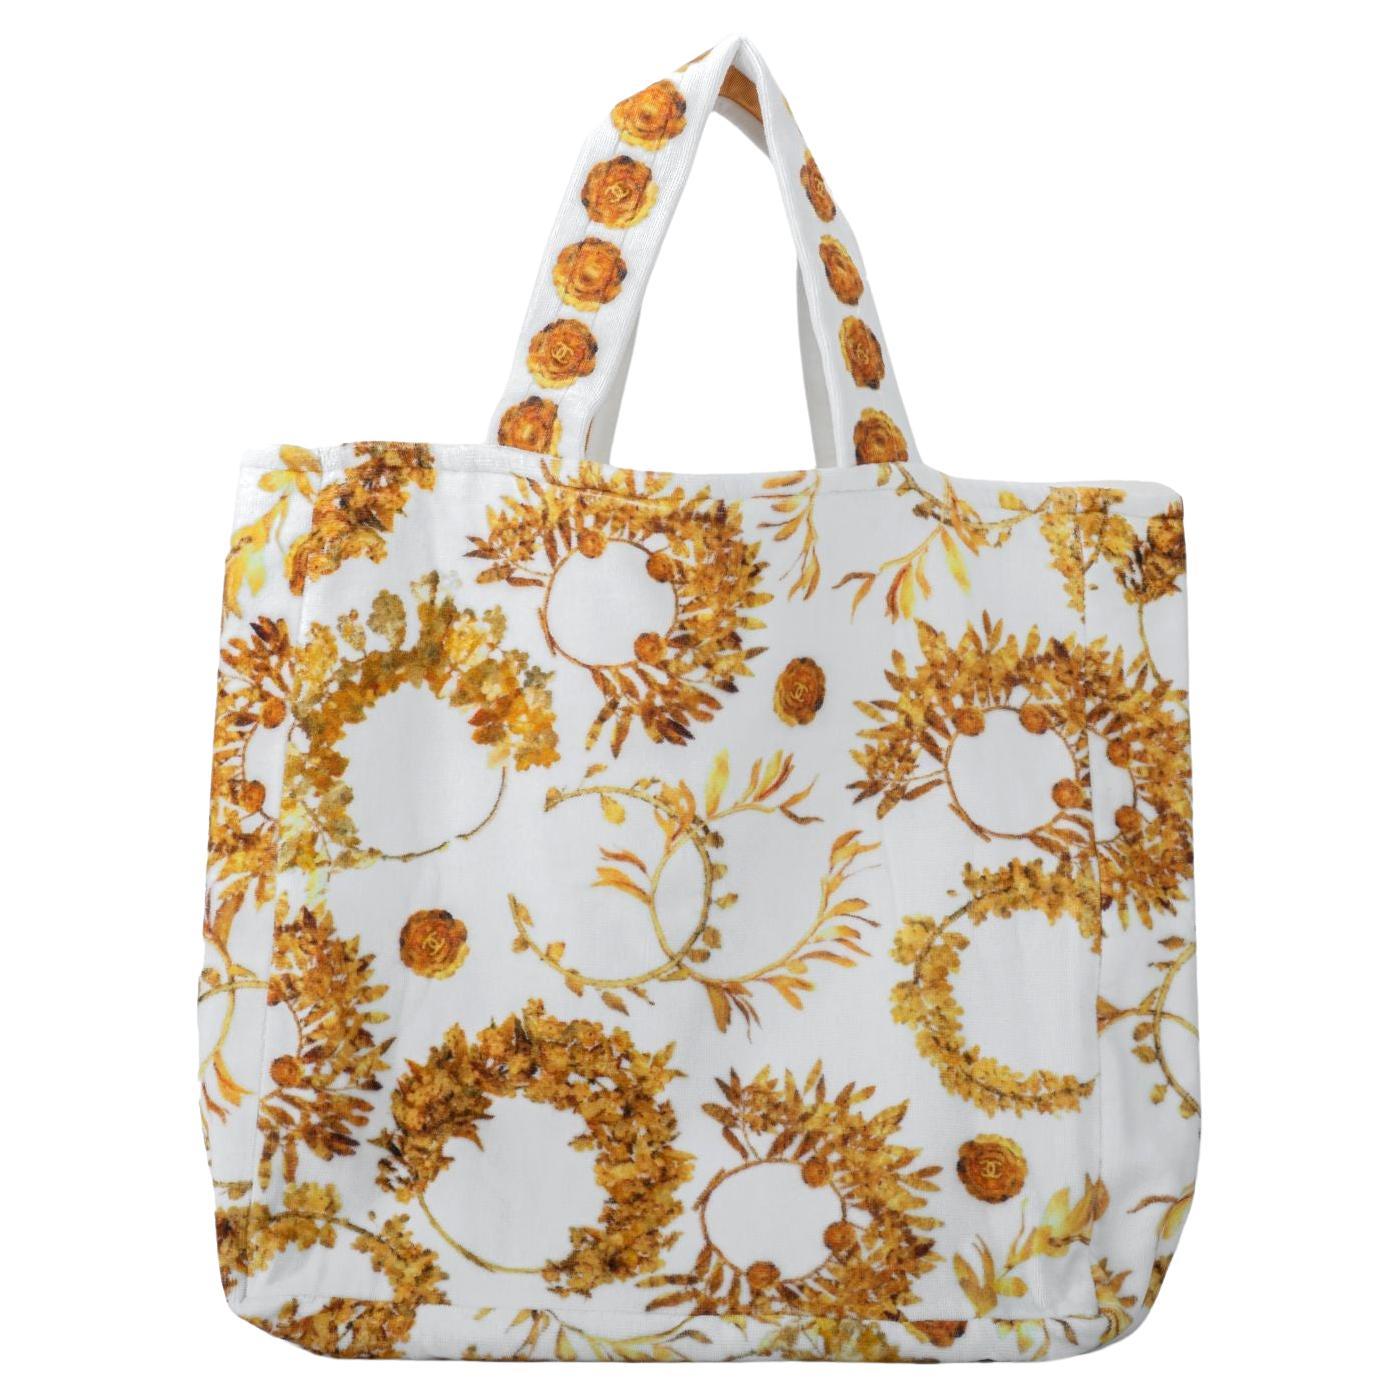 Chanel Terry Cloth Beach Bag - 17 For Sale on 1stDibs  terry cloth  backpack, chanel terry bag, chanel terry beach bag